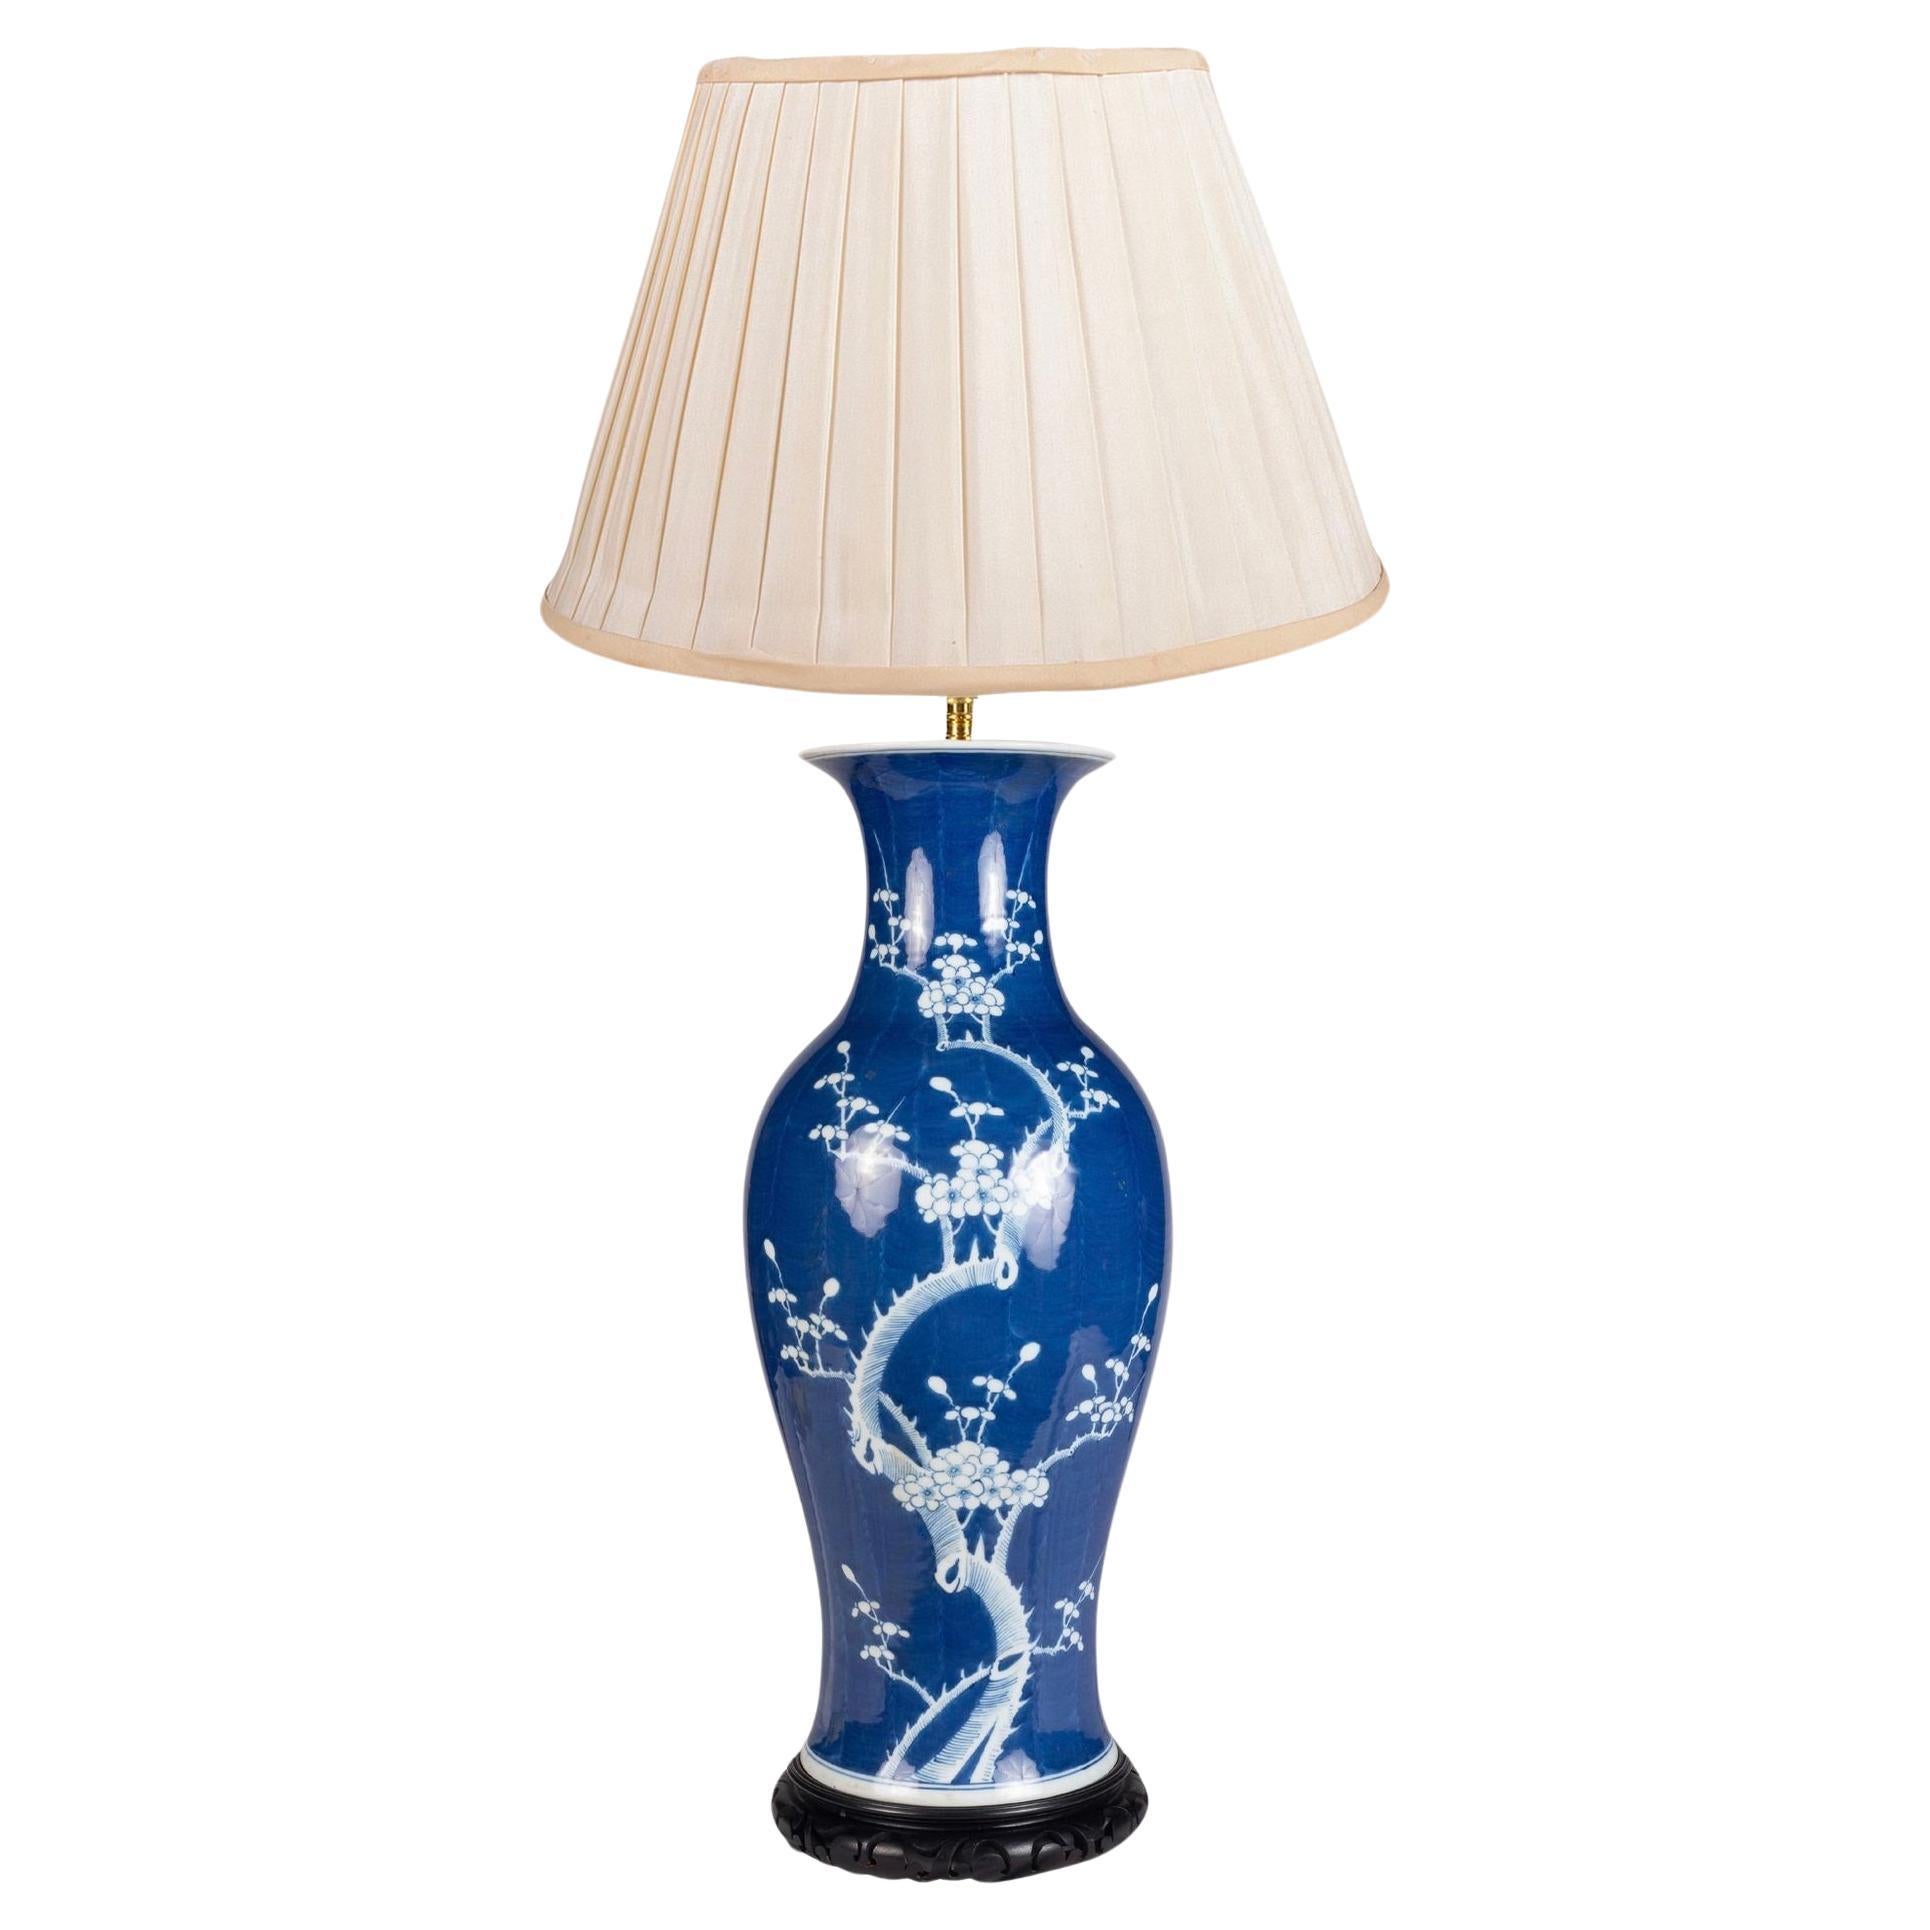 Chinesische Vase/Lampe mit blauen und weißen Prunusblüten, um 1890.